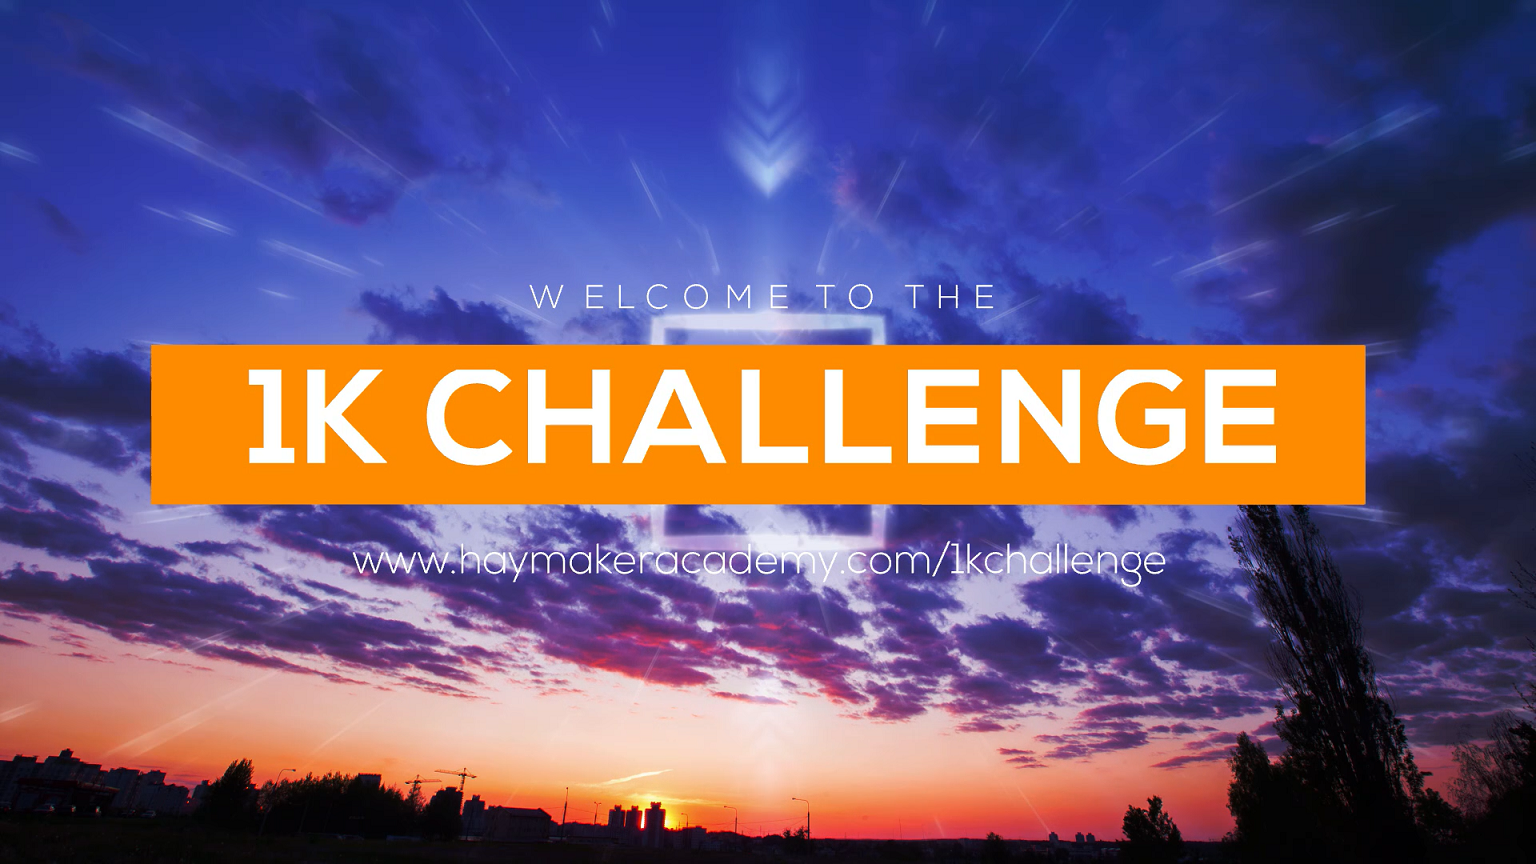 Africa 1k Challenge Videoa